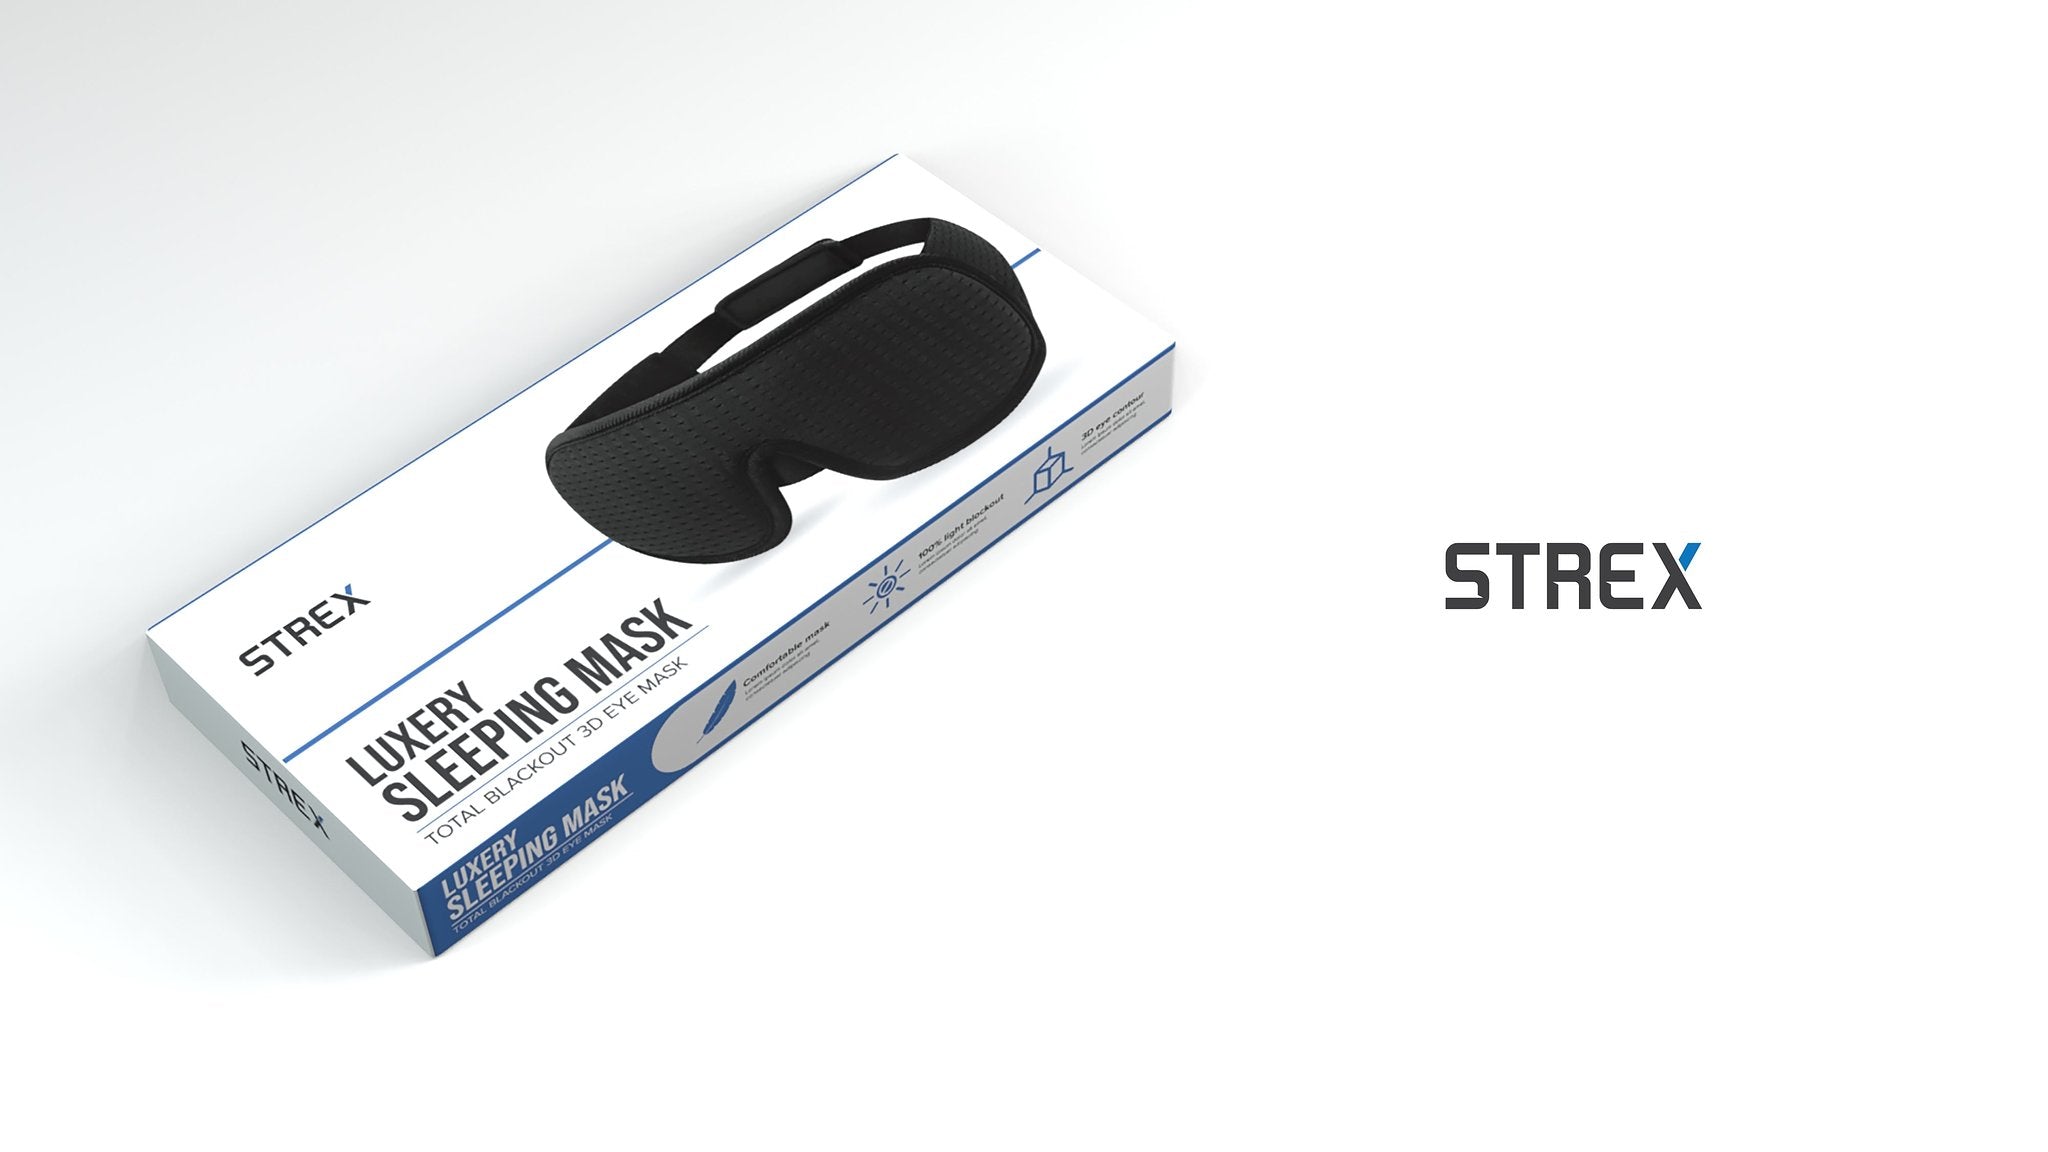 Strex Luxe Slaapmasker - 3D Ergonomisch - 100% Verduisterend - Traagschuim - Slaap Masker - Oog Mask